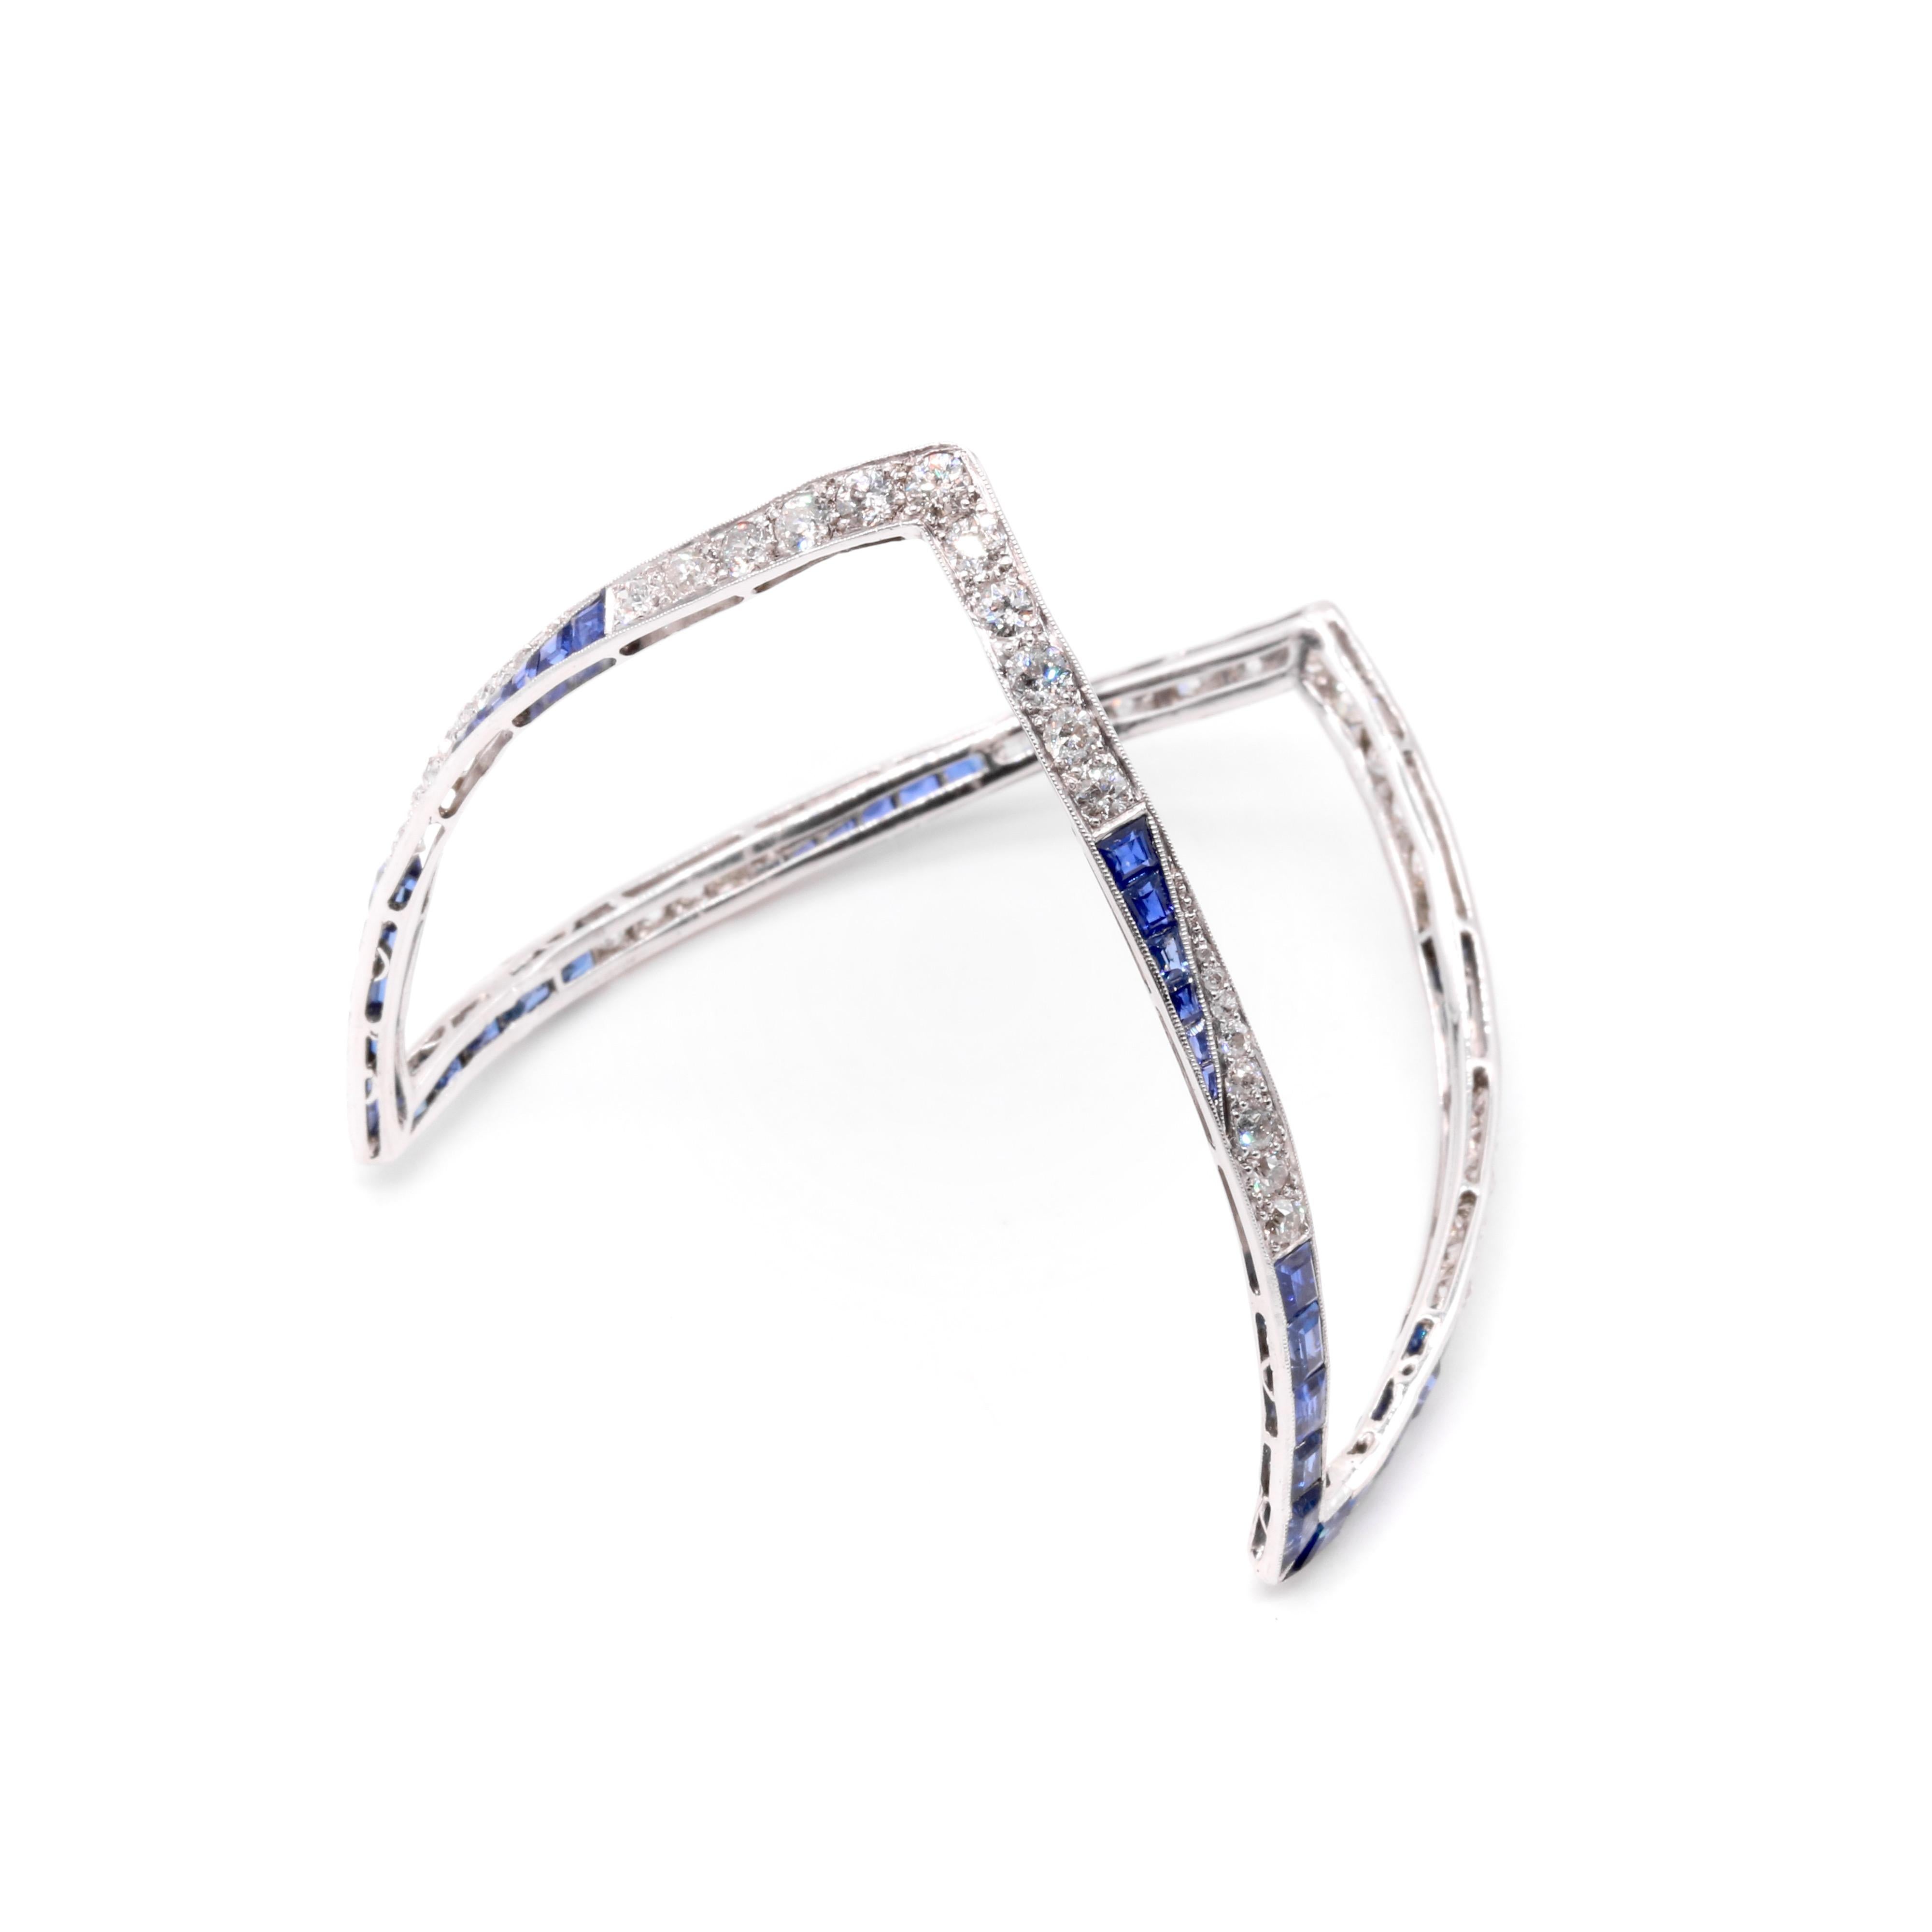 Ein Art-Deco-Armreif mit Diamanten, Saphiren und Platin, bestehend aus vierundfünfzig Diamanten im Rundschliff und vierundvierzig blauen Saphiren im Kaliberschliff, gefasst in Platin. 

Dieser erstaunliche Art-Déco-Armreif ist etwas, das ich noch